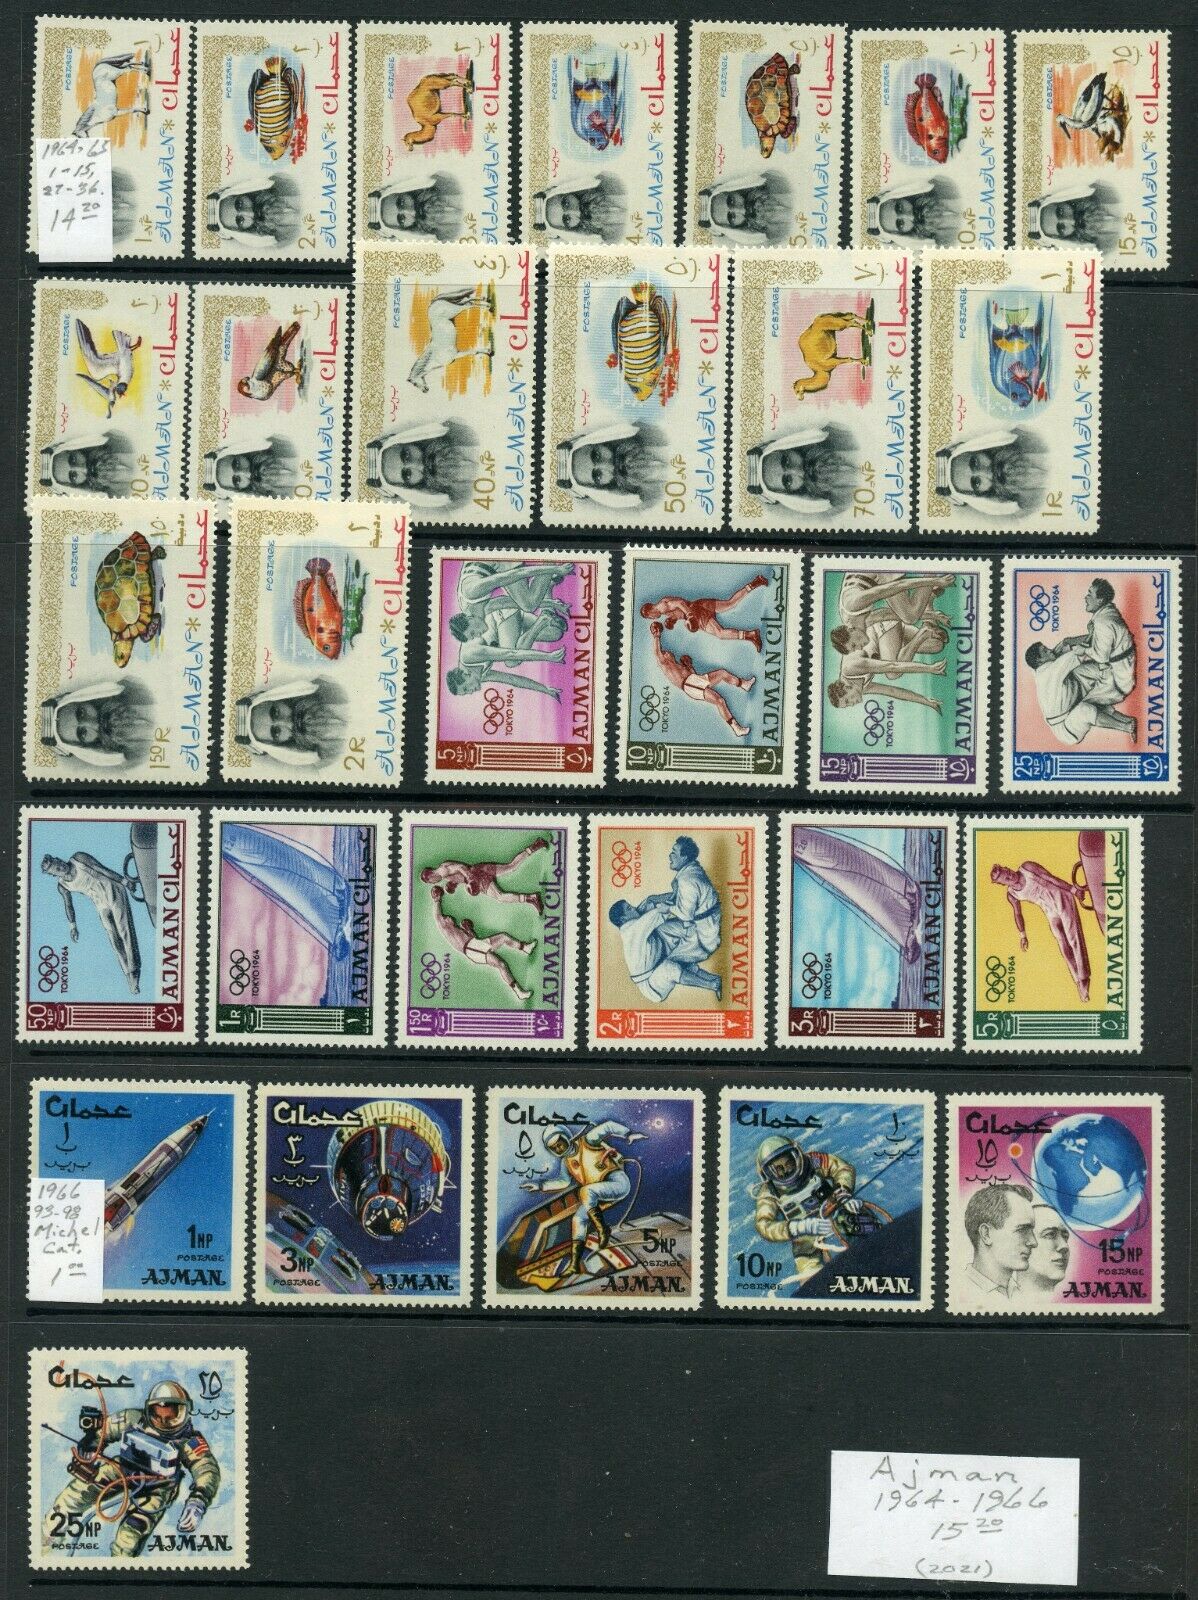 Weeda Ajman Mnh Collection Of 1964-1966 Issues Cv $15.20